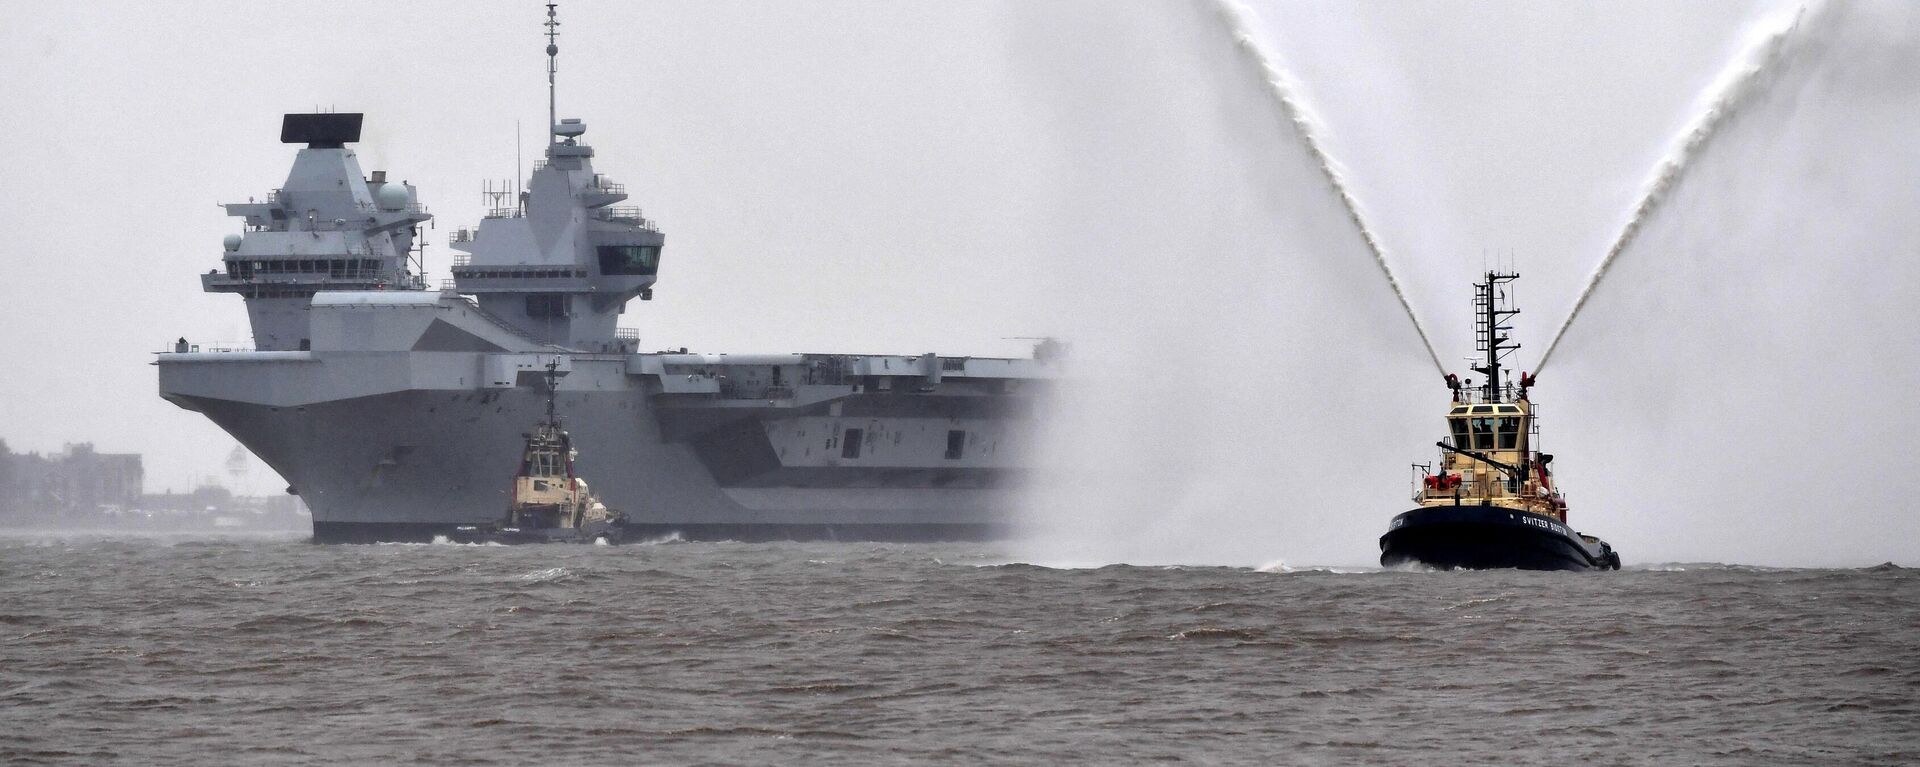 قارب سحب يرش الماء في الهواء أثناء ترحيبه بحاملة الطائرات إتش إم إس برينس أوف ويلز التابعة للبحرية الملكية البريطانية في عام 2020  - سبوتنيك عربي, 1920, 26.12.2022